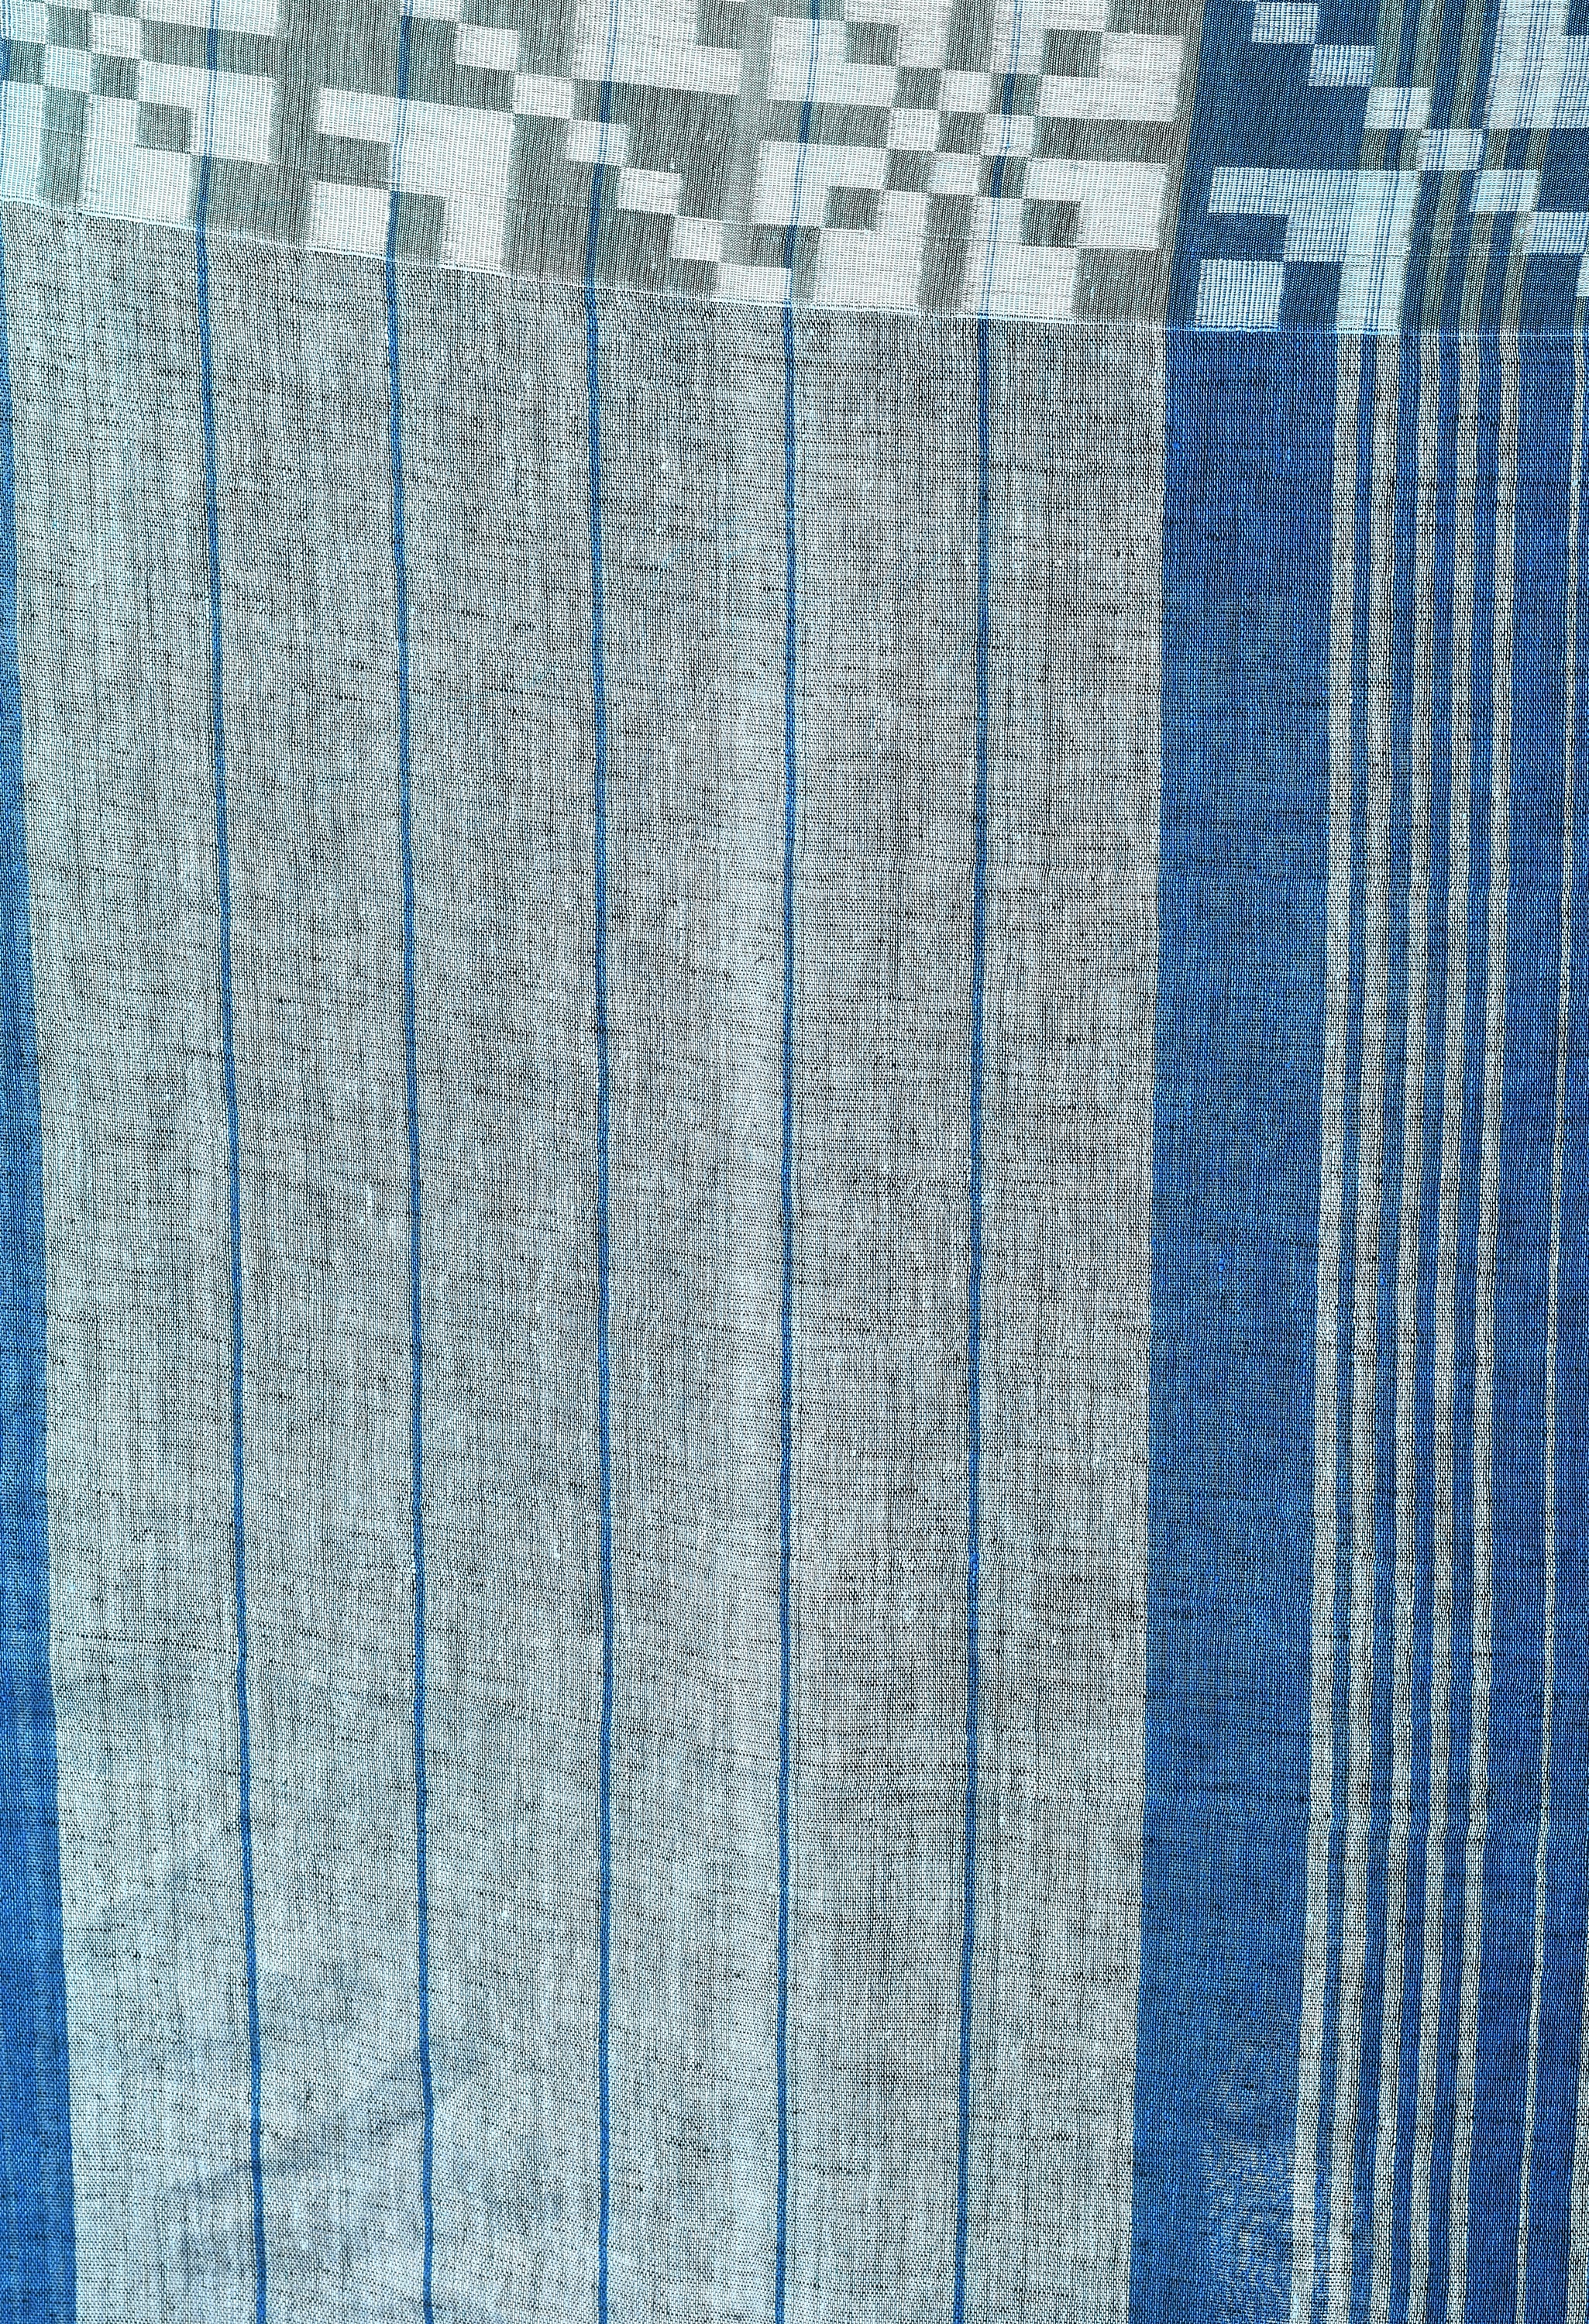 Handwoven Linen Saree (Blue)